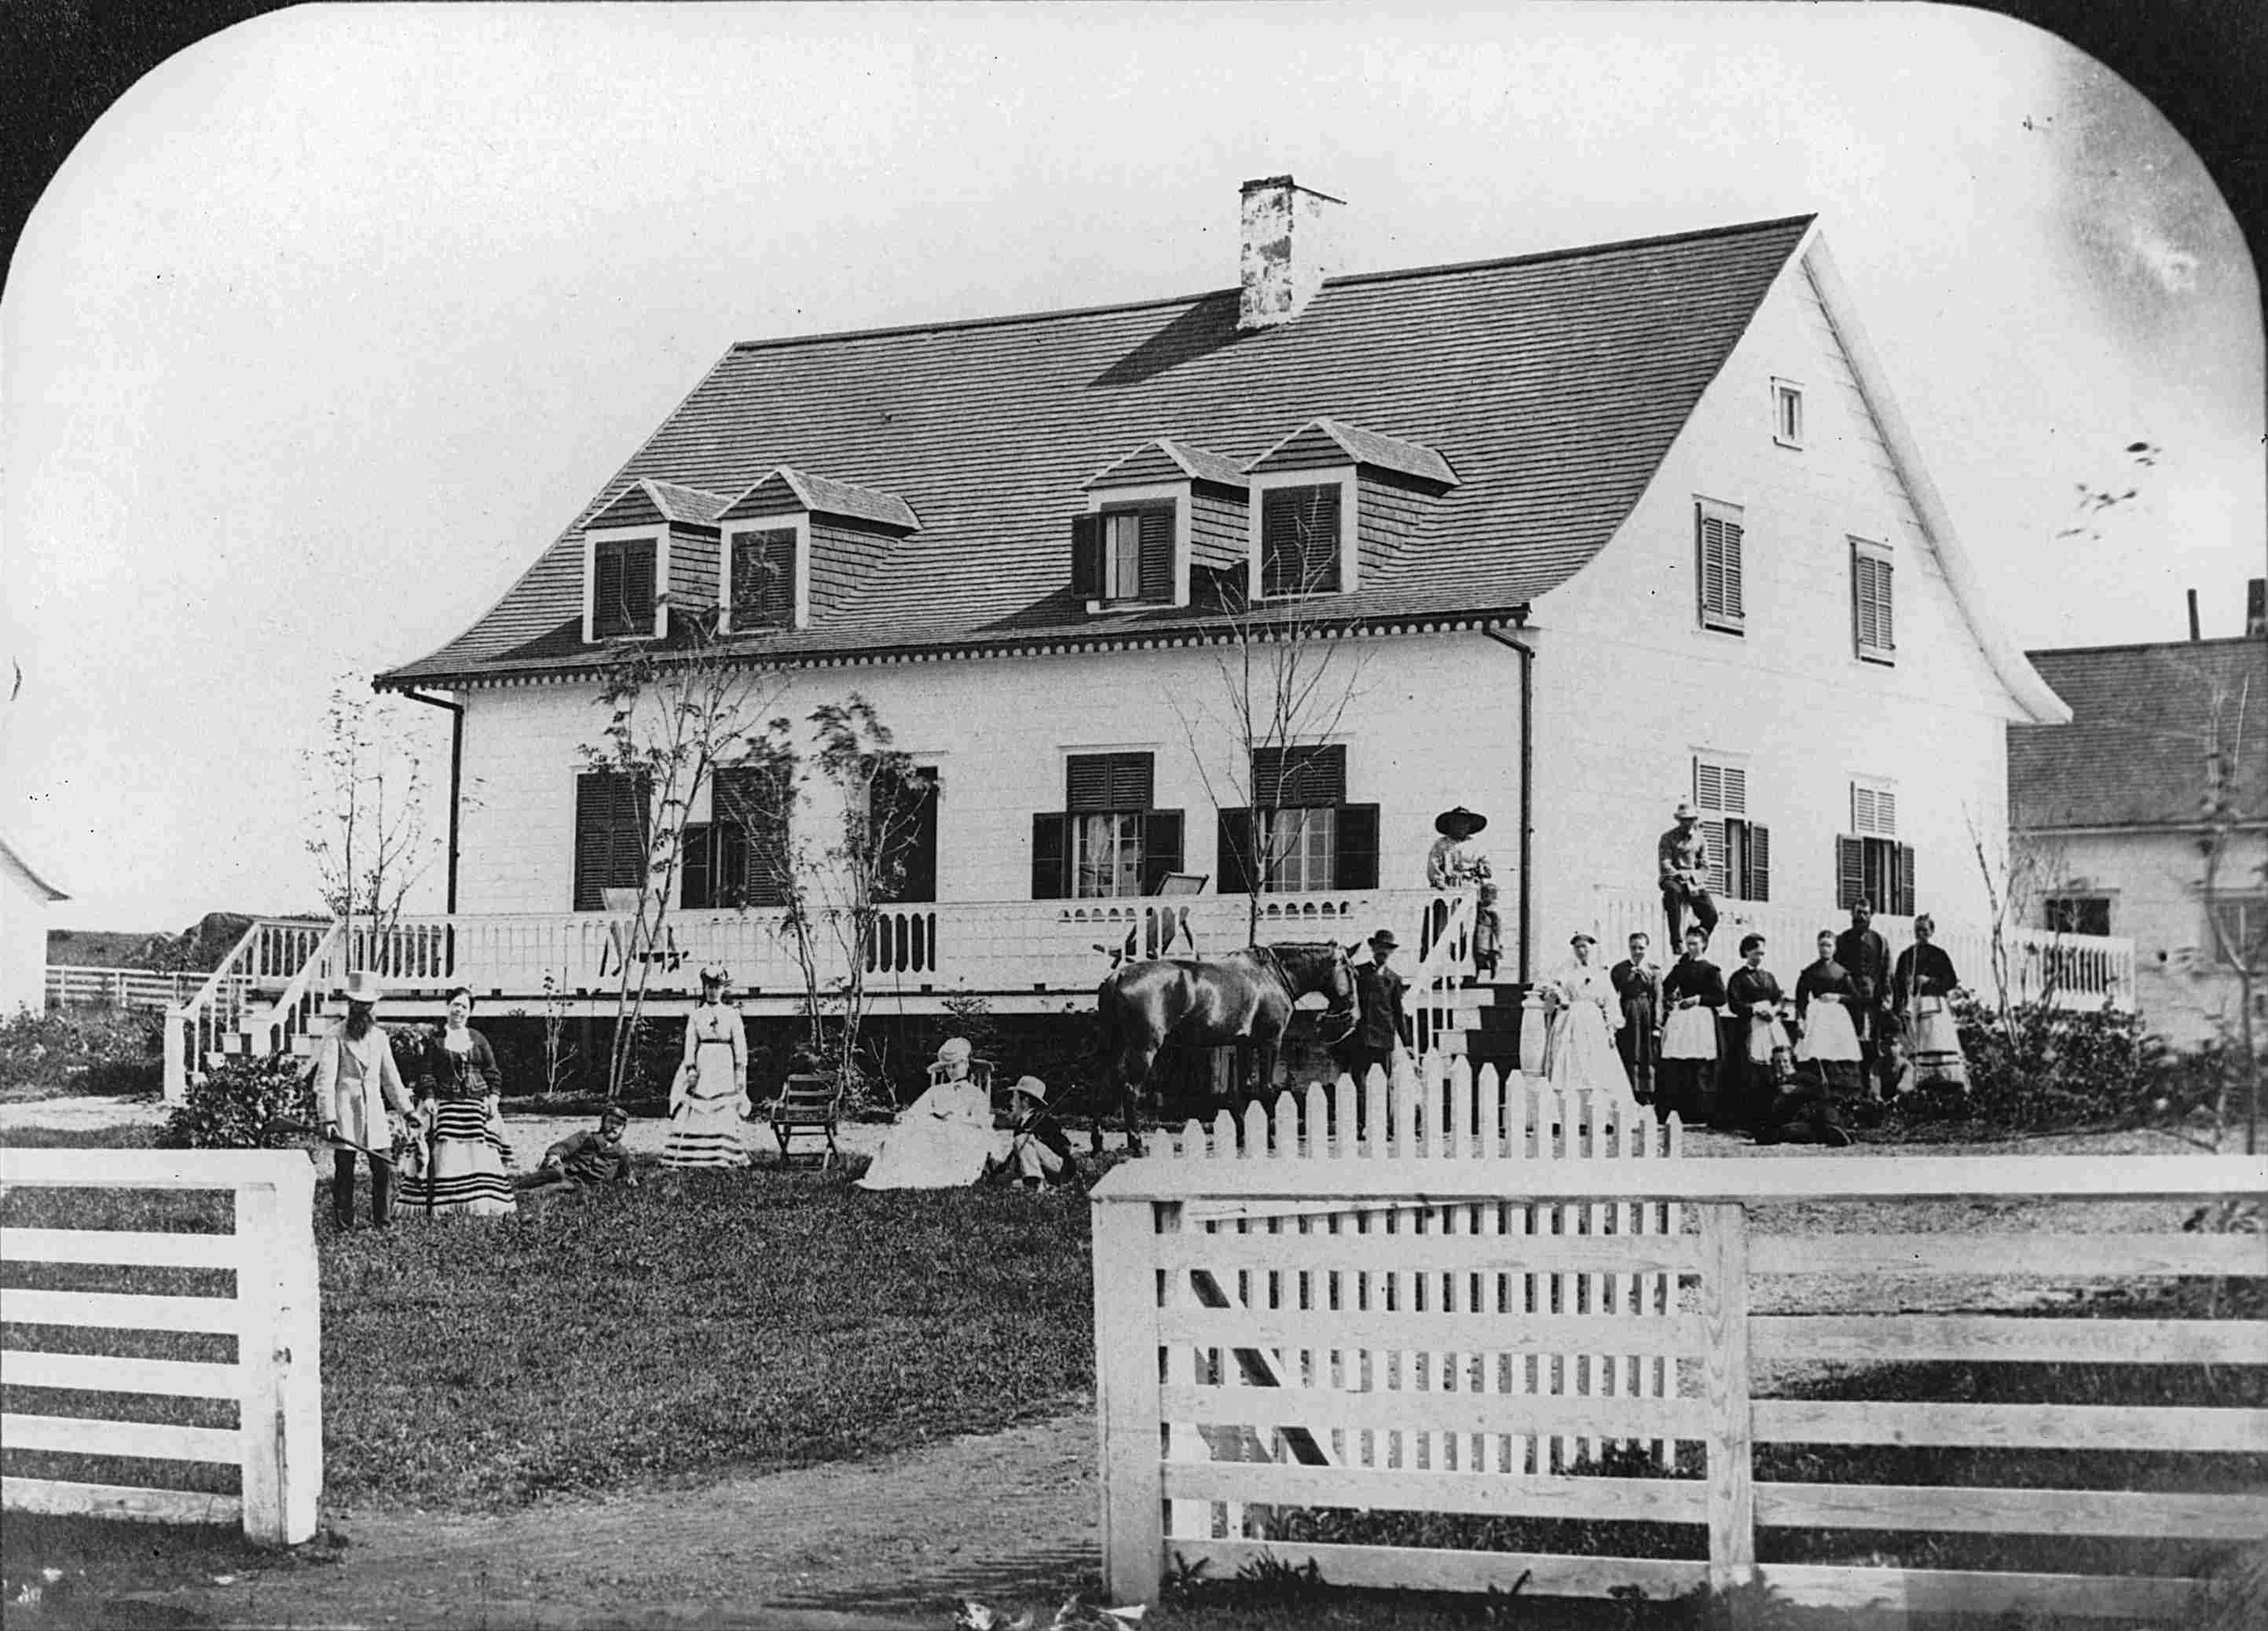 Un groupe d'une quinzaine de personnes pose devant une maison rurale ancienne.